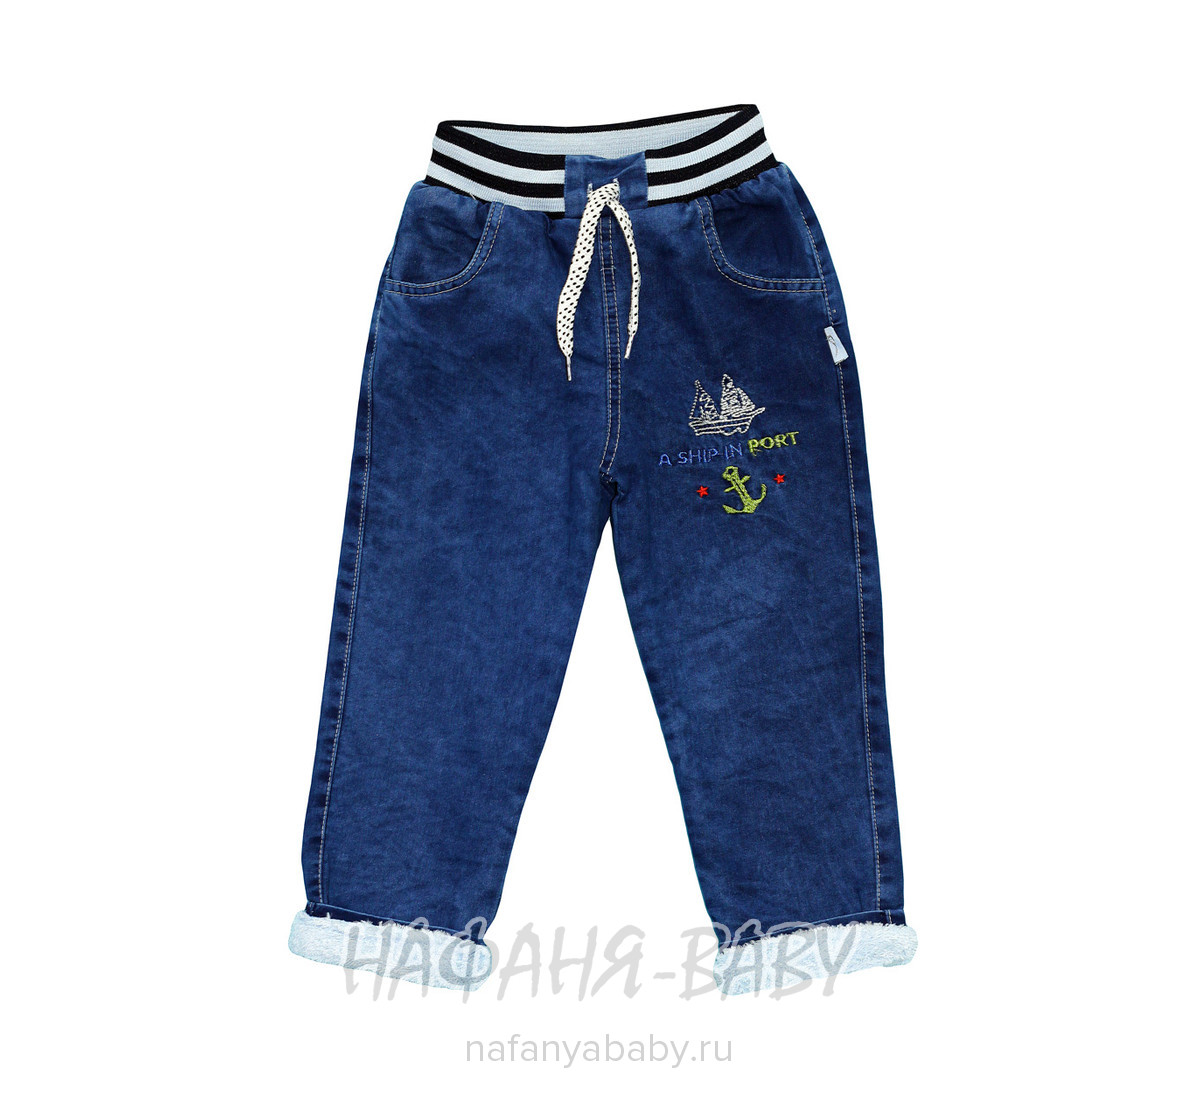 Зимние джинсы для мальчика AKIRA арт: 2819, 5-9 лет, 1-4 года, оптом Турция